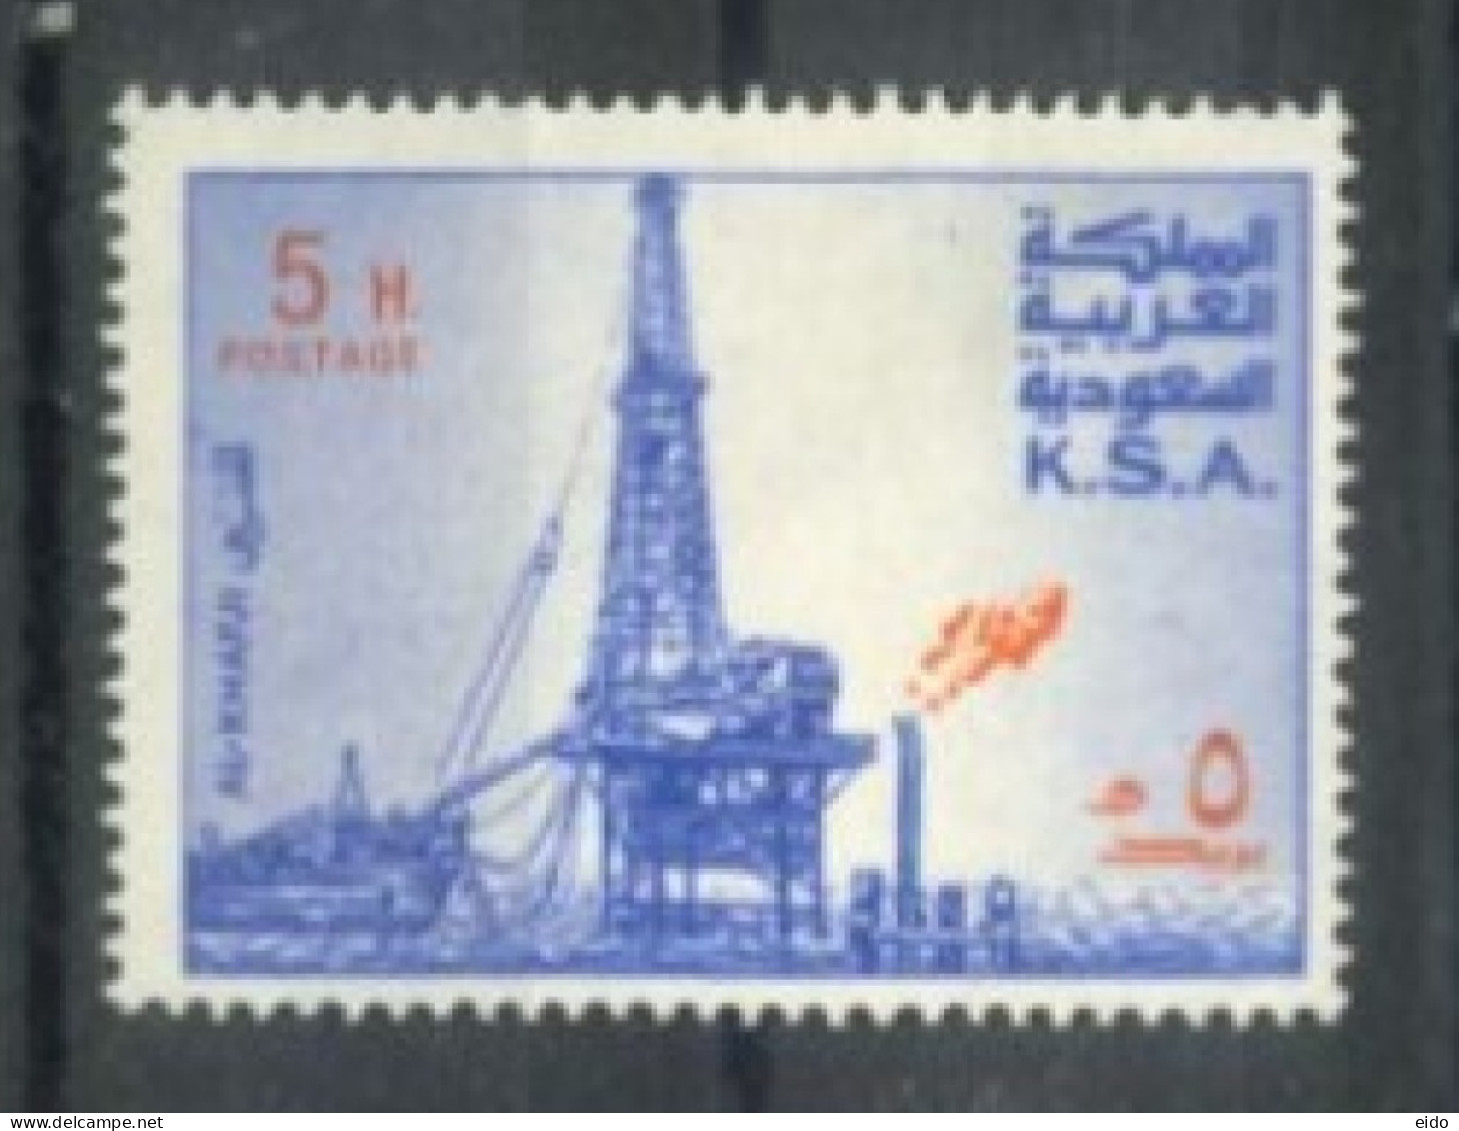 SAUDI ARABIA - 1976/81, OIL RIG, AL-KHAFJI STAMPS SET OF 11, SG # 1167, USED. - Arabie Saoudite